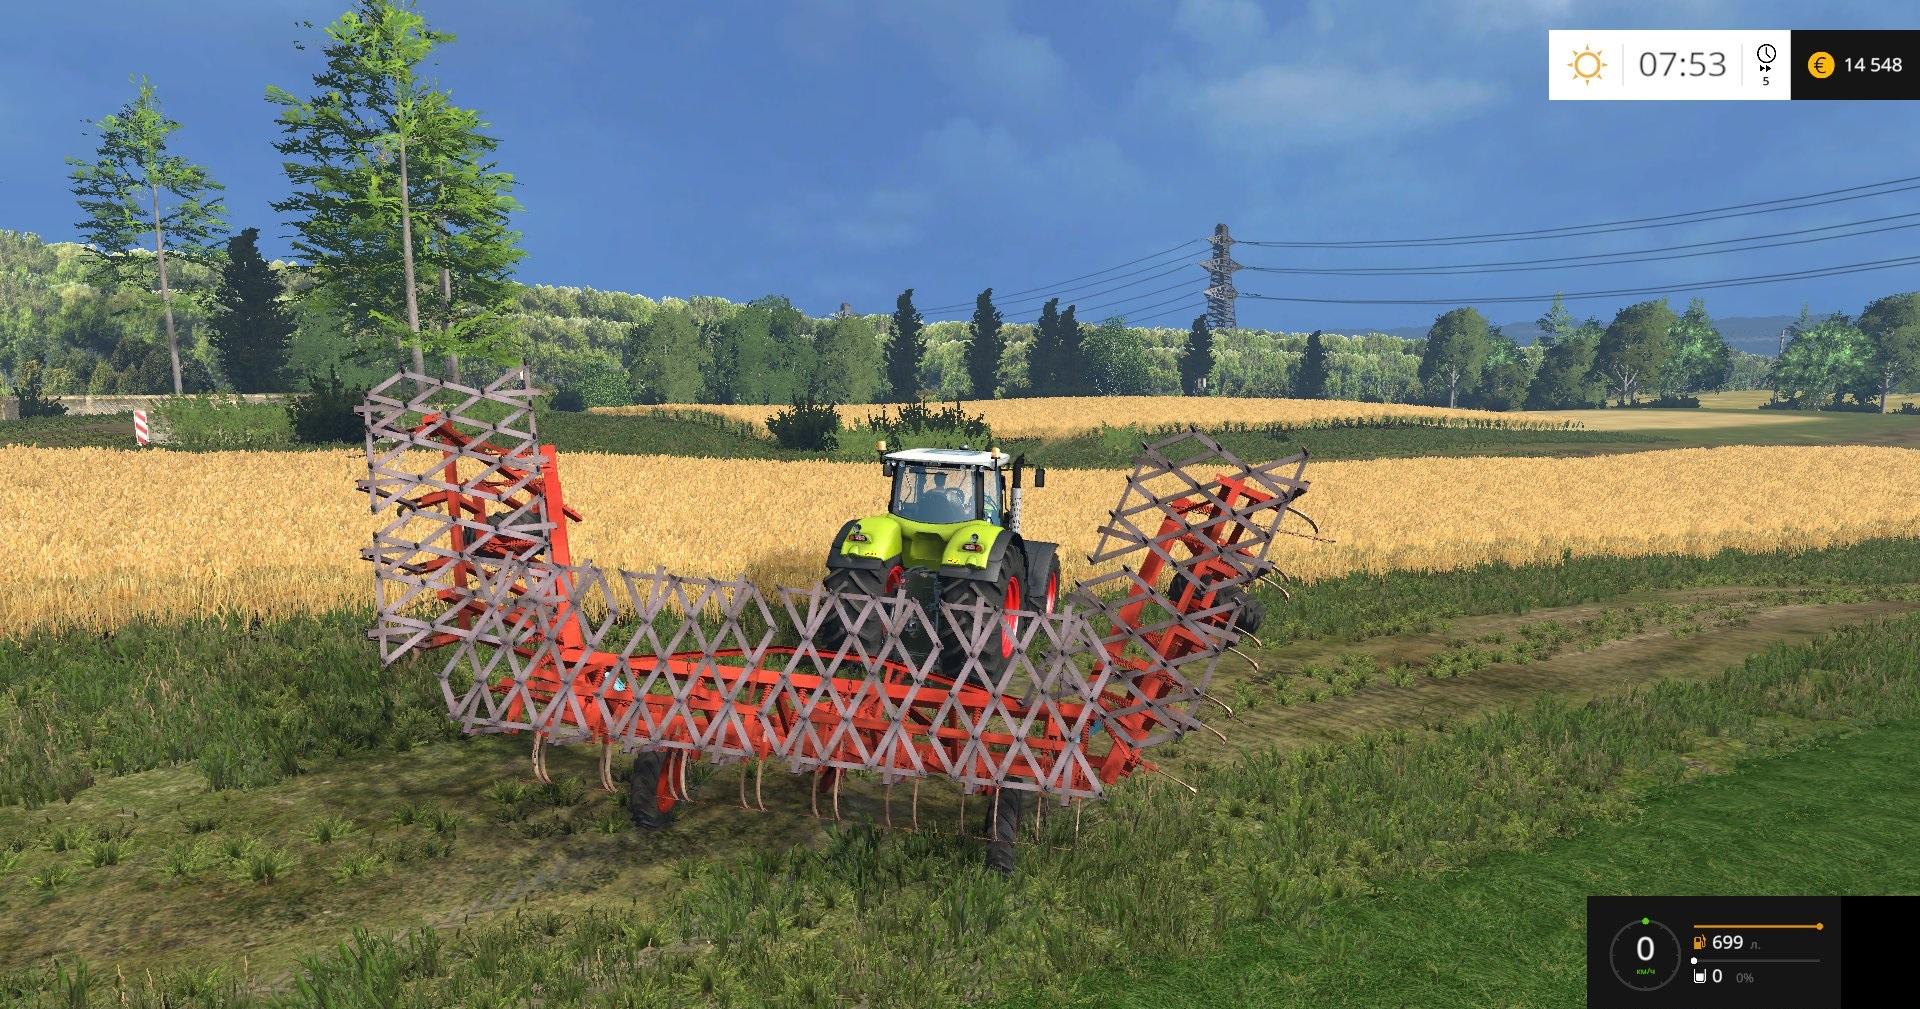 Cultivator Kps 8 V10 • Farming Simulator 19 17 22 Mods Fs19 17 22 Mods 7262